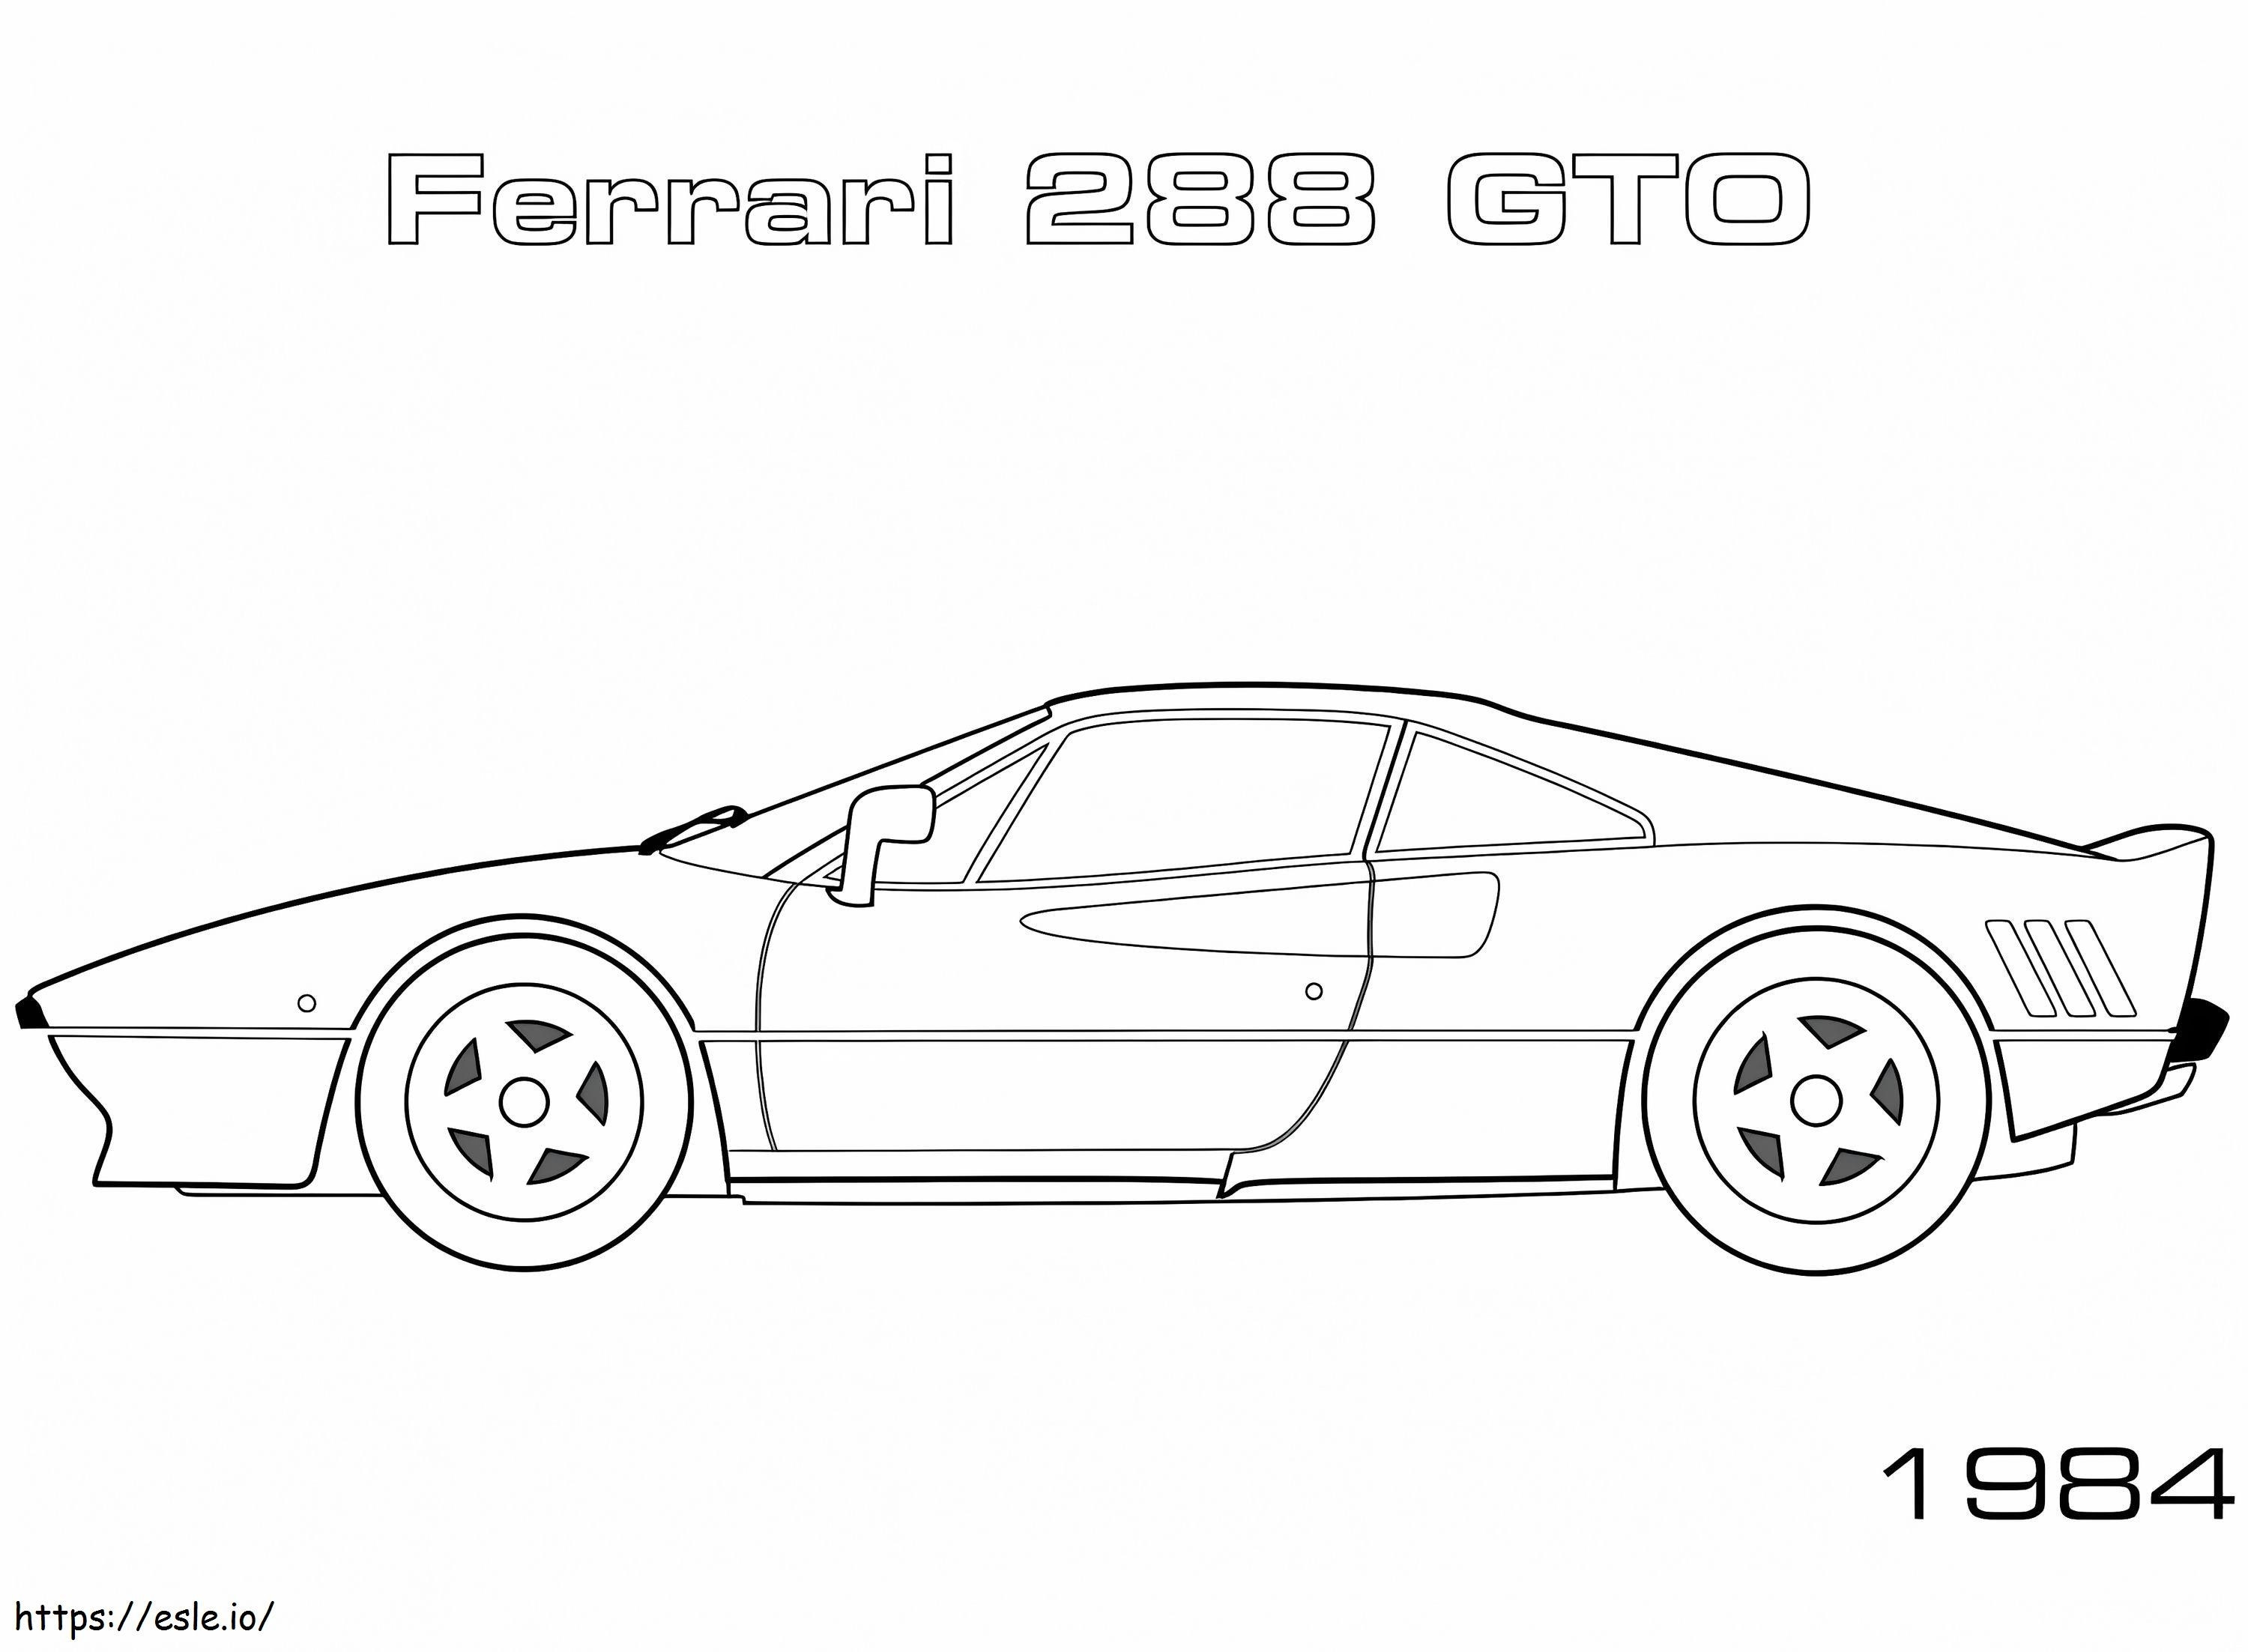 1984 Ferrari 288 Gto coloring page